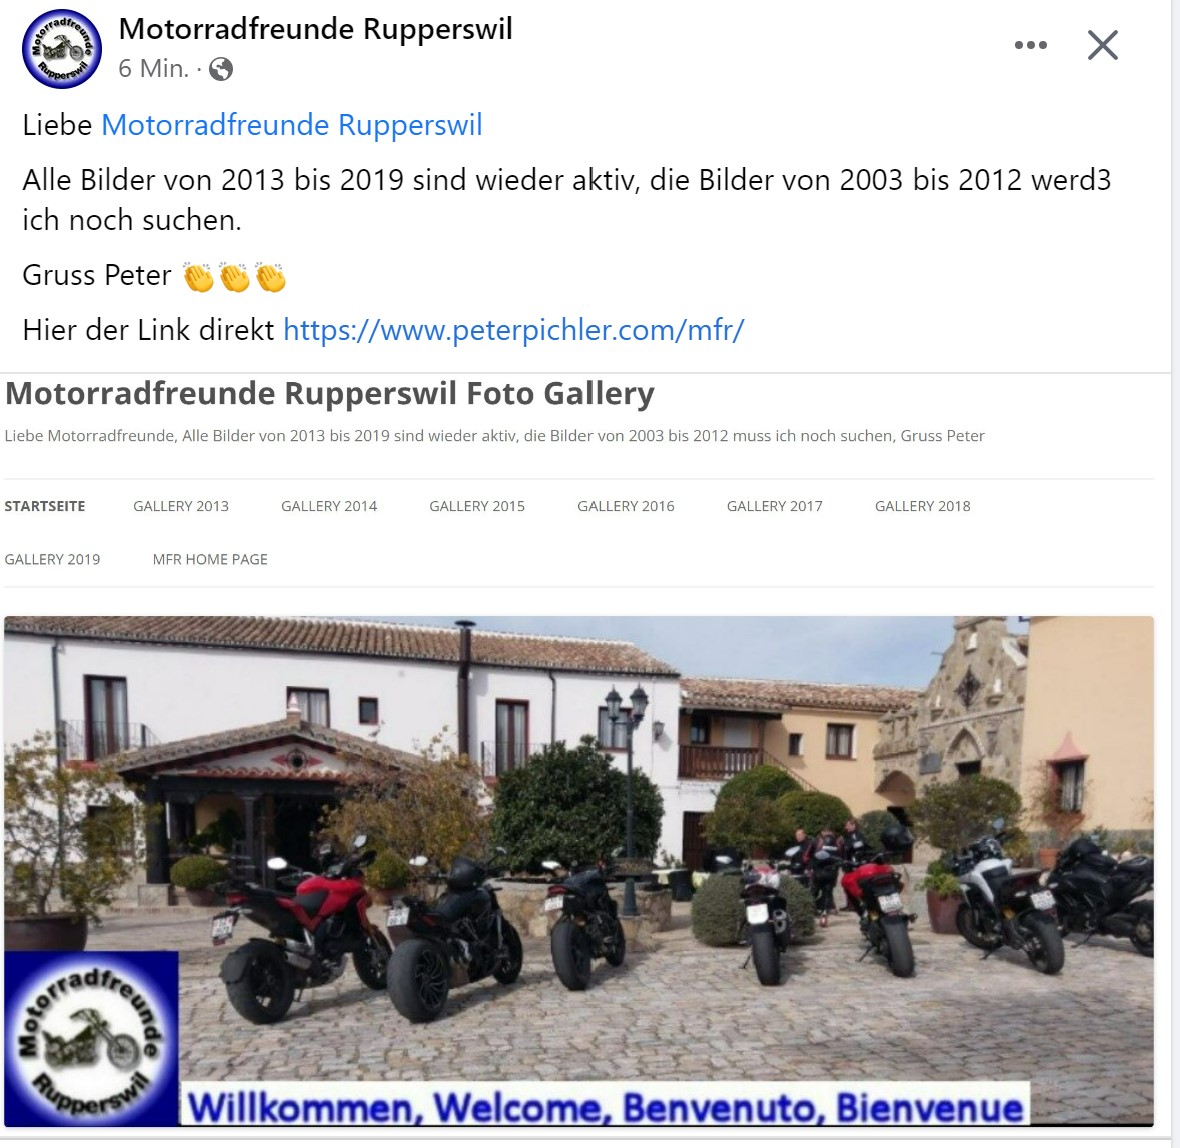 Motorradfreunde Rupperswil Foto Gallery